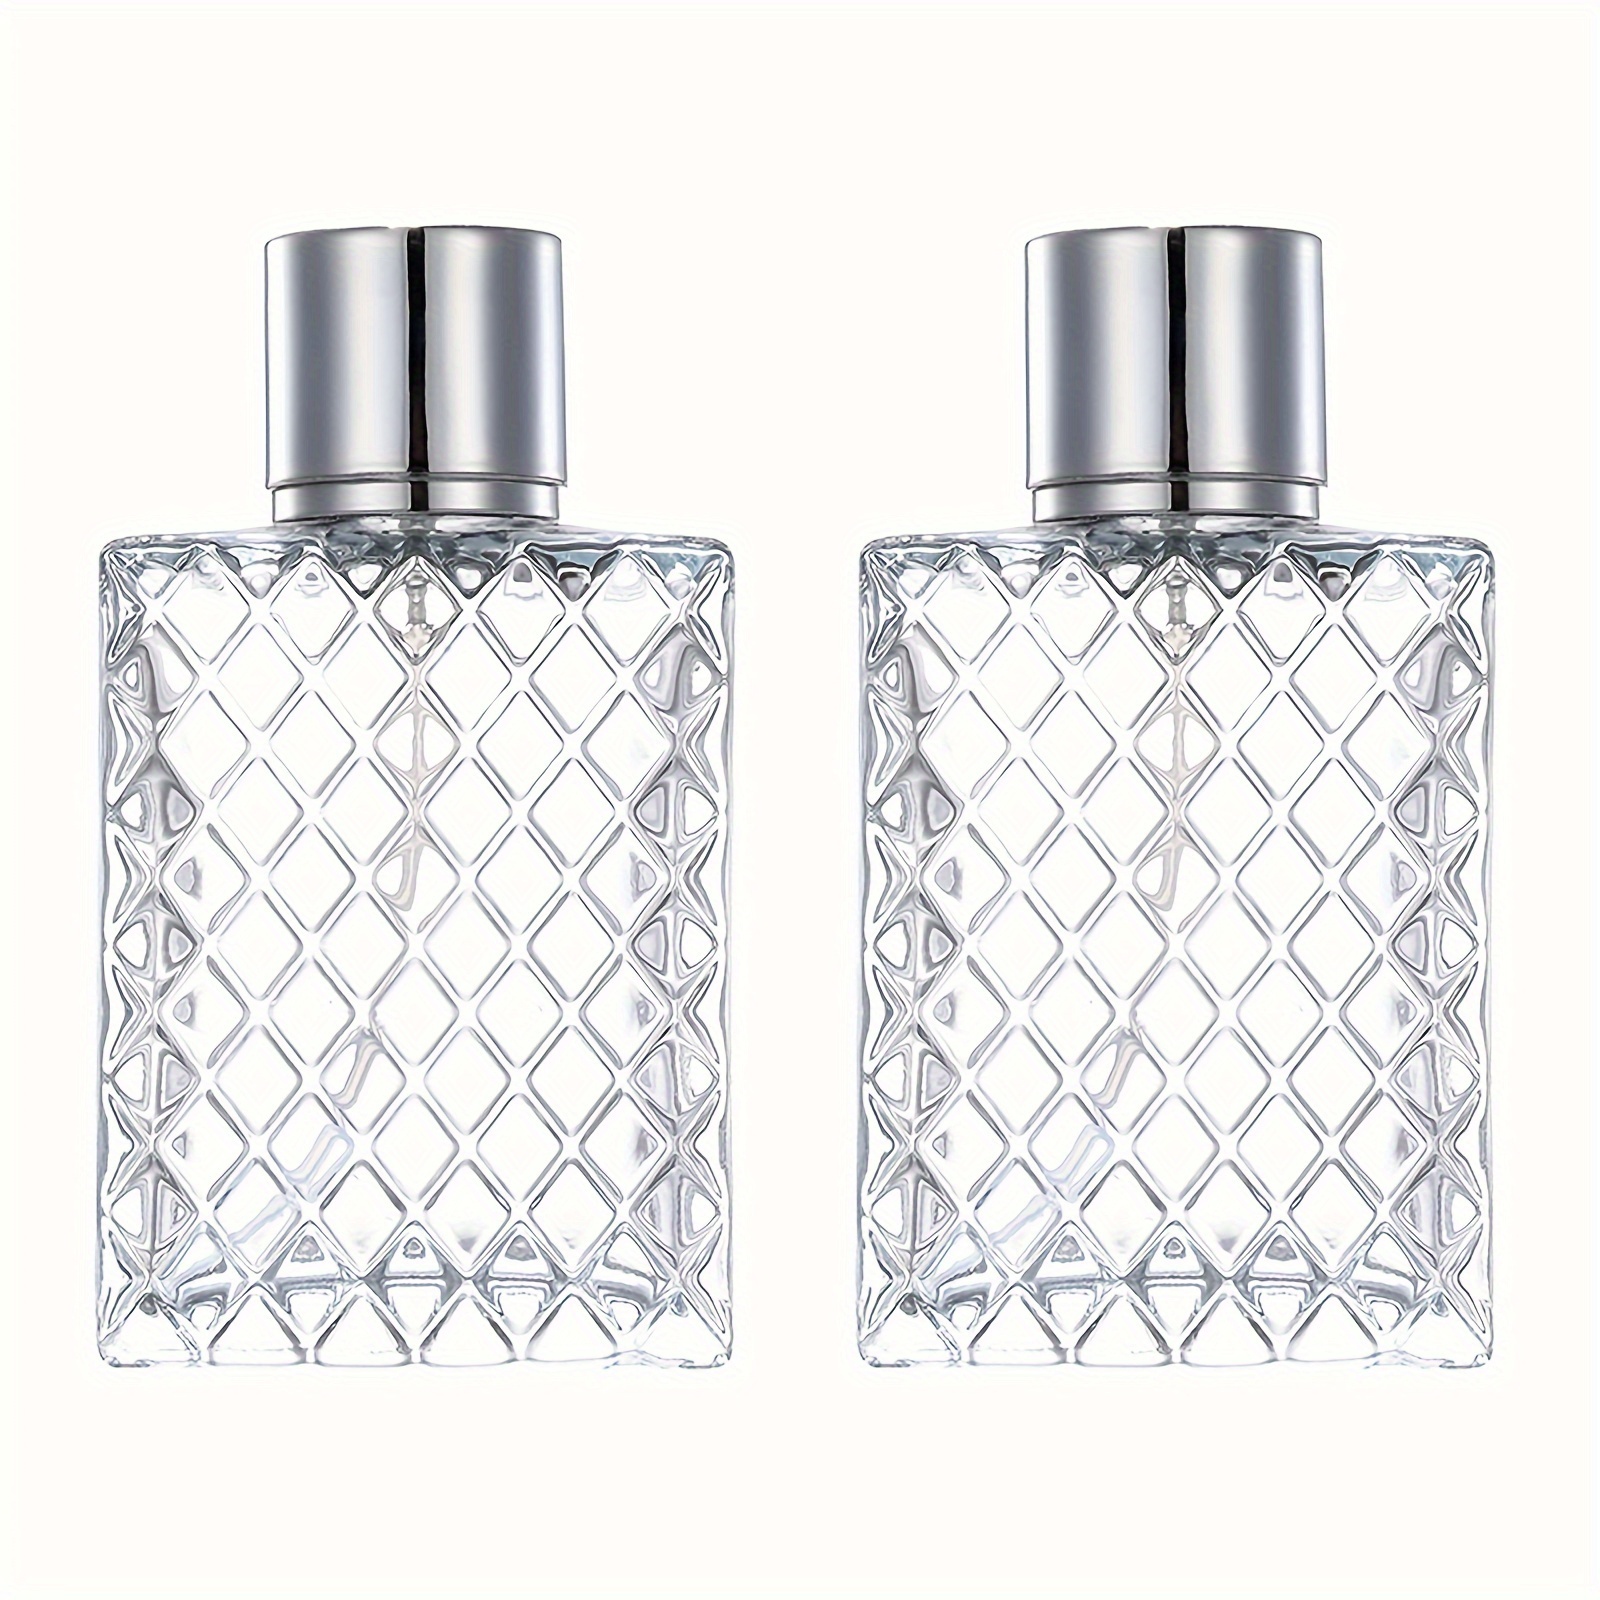 

Luxury 100ml Glass Perfume Atomizer - Refillable, Portable Spray Bottle For Fragrances & Toners